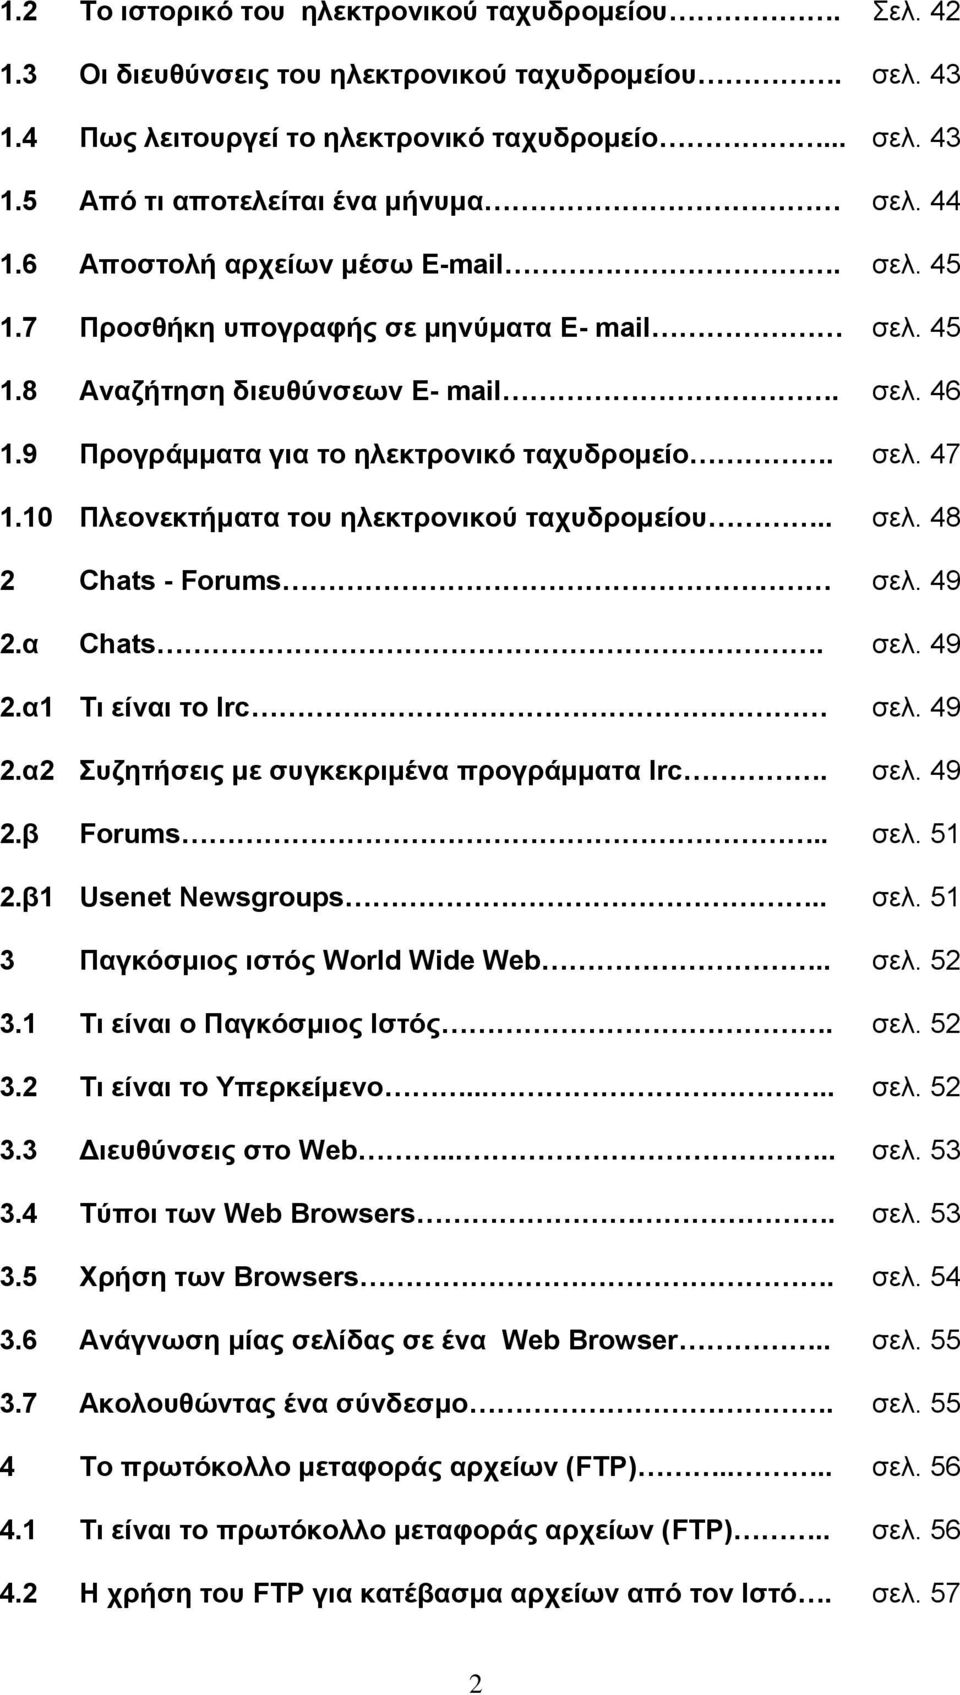 10 Πλεονεκτήματα του ηλεκτρονικού ταχυδρομείου.. σελ. 48 2 Chats - Forums σελ. 49 2.α Chats. σελ. 49 2.α1 Τι είναι το Irc σελ. 49 2.α2 Συζητήσεις με συγκεκριμένα προγράμματα Irc. σελ. 49 2.β Forums.